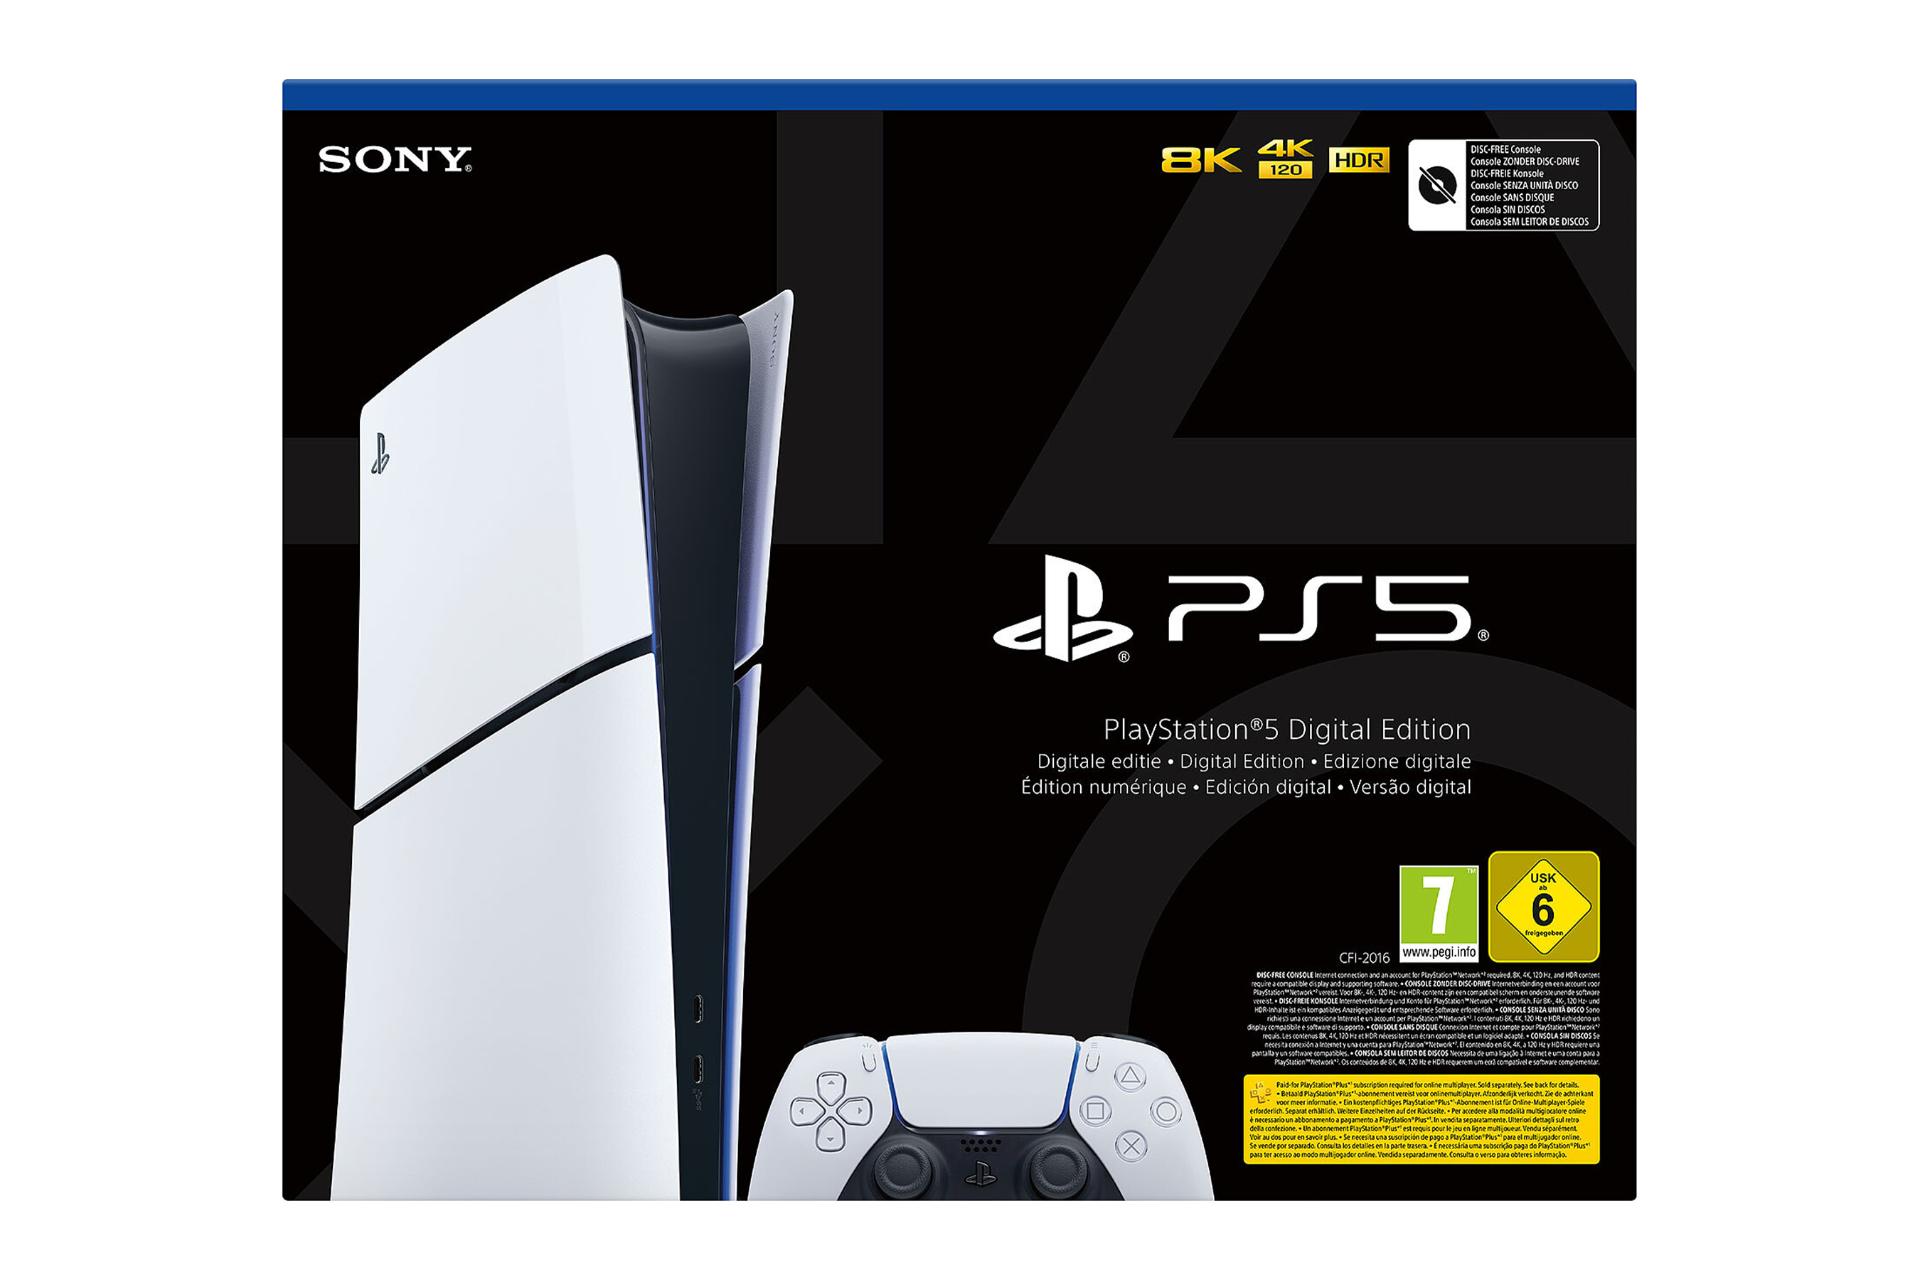 نمای جعبه کنسول بازی پلی استیشن 5 اسلیم دیجیتال سونی / Sony PlayStation 5 Slim Digital Edition